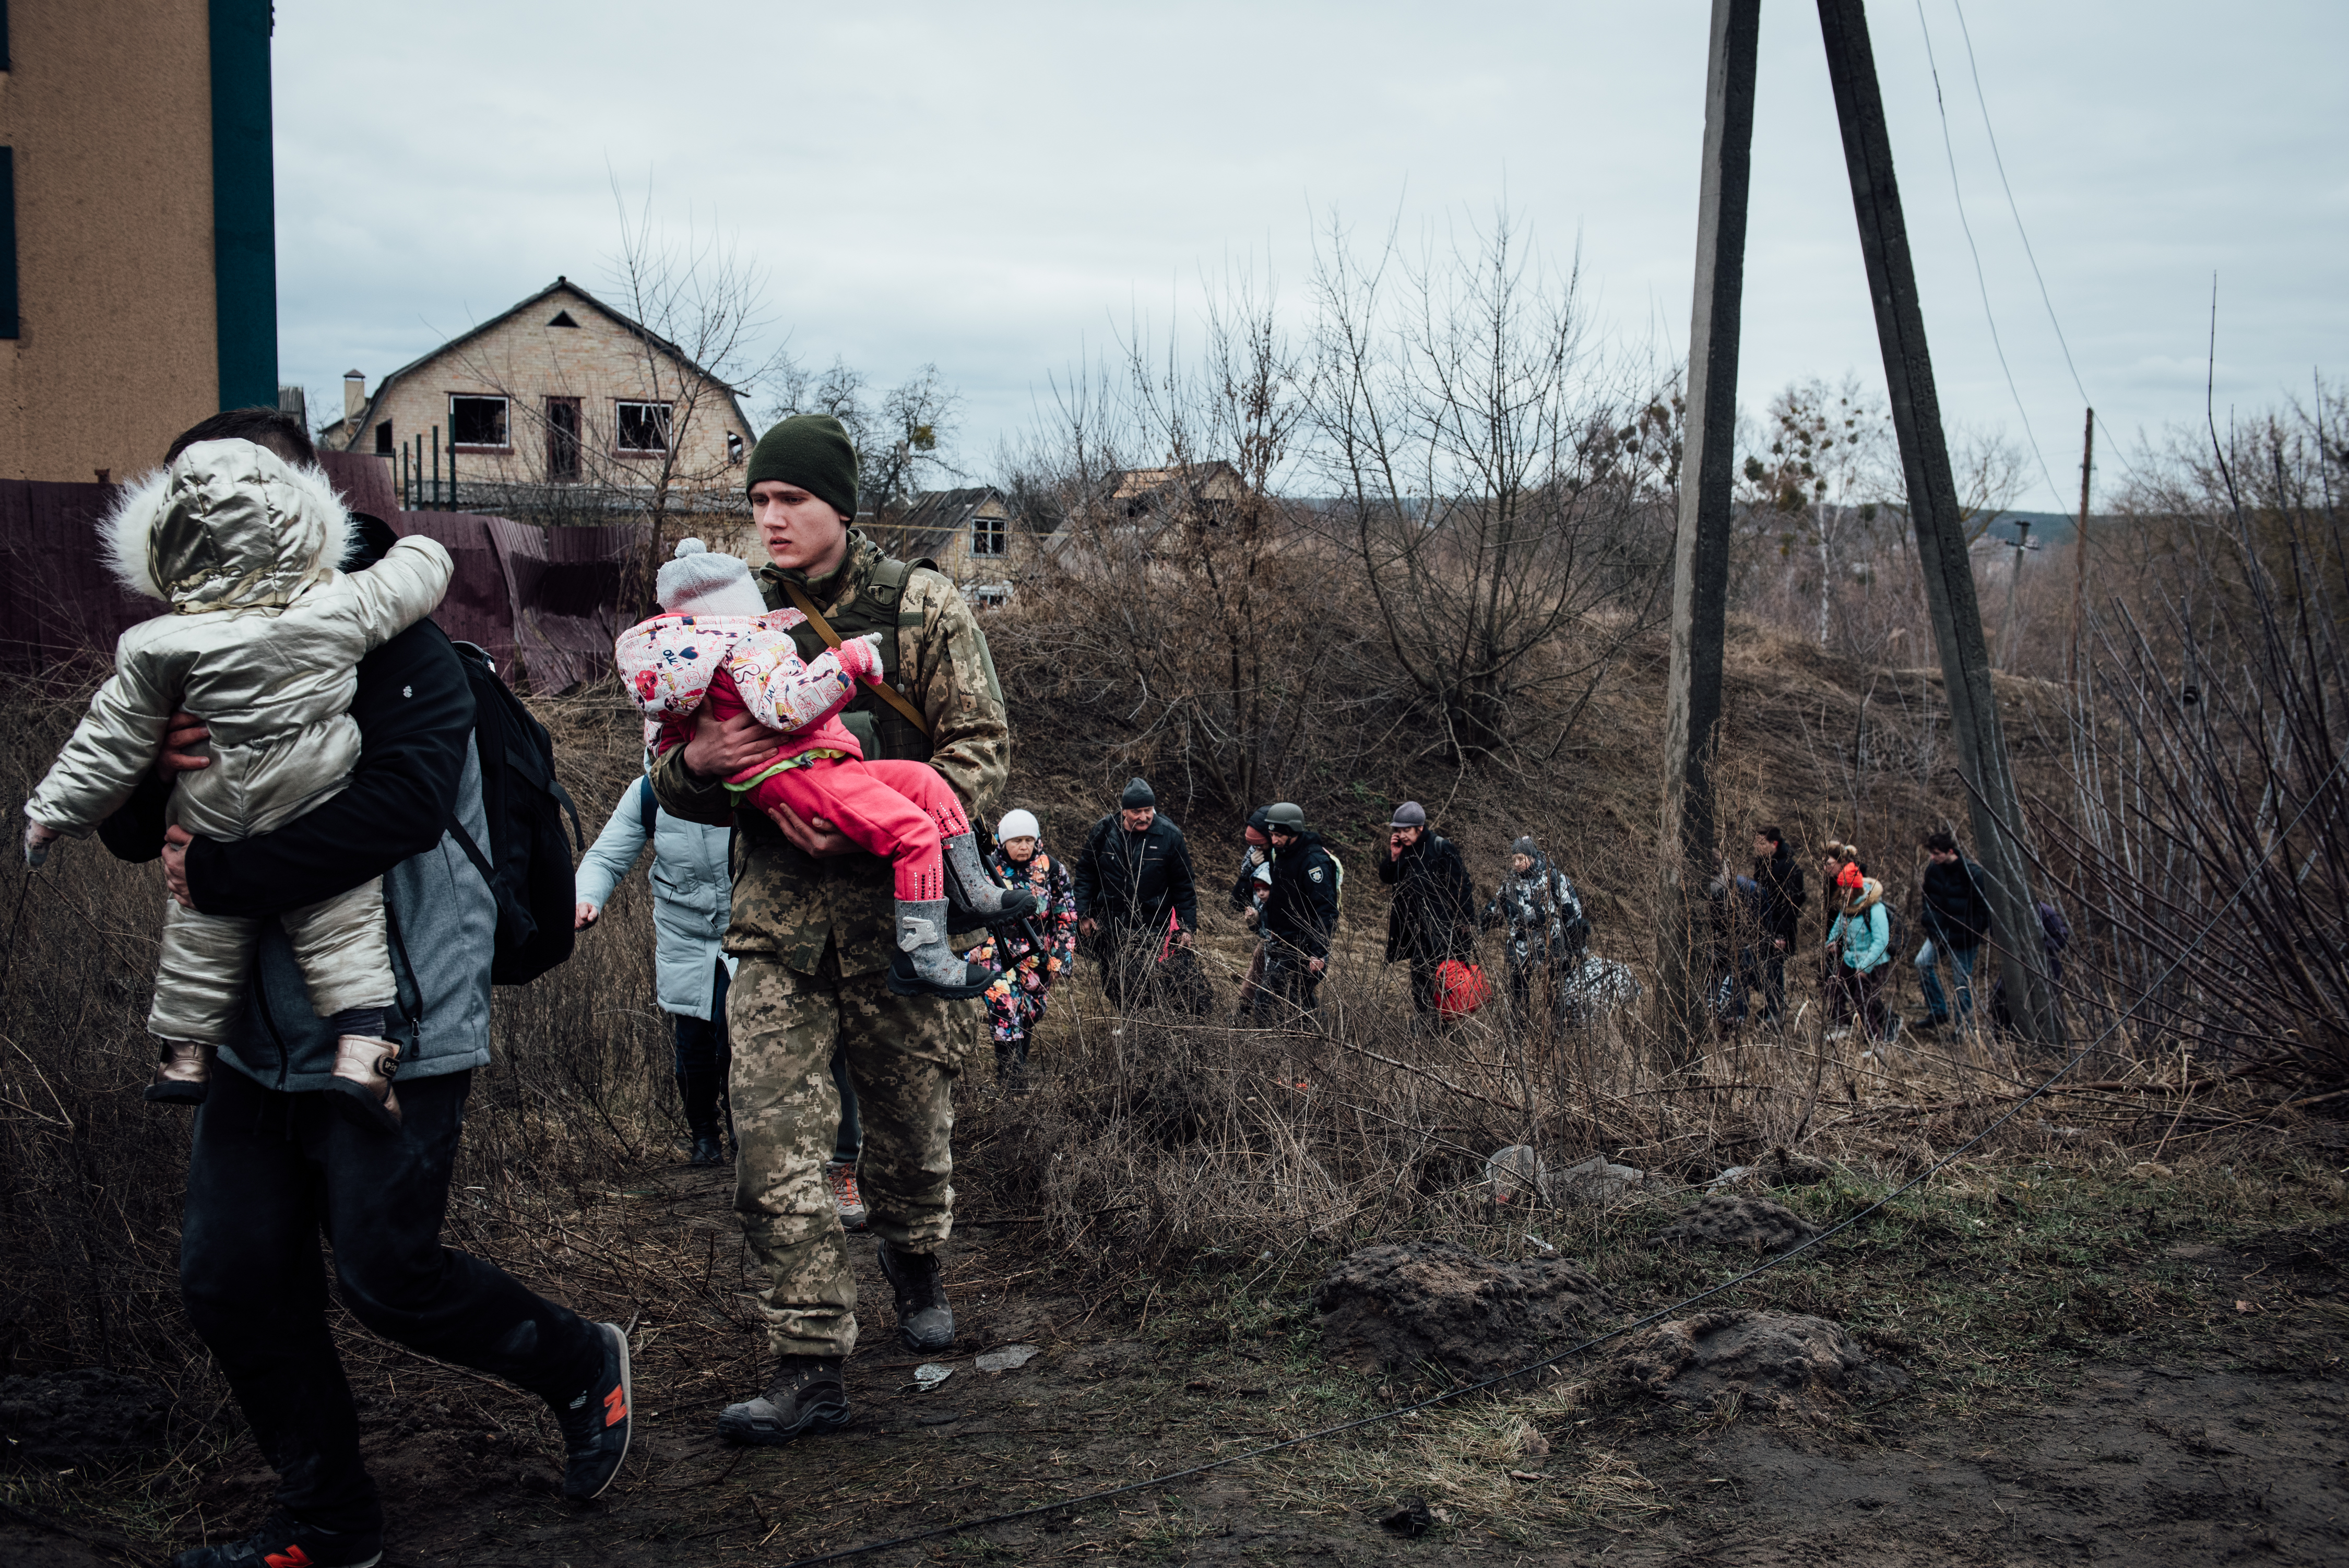 Prajurit menggendong anak kecil saat evakuasi